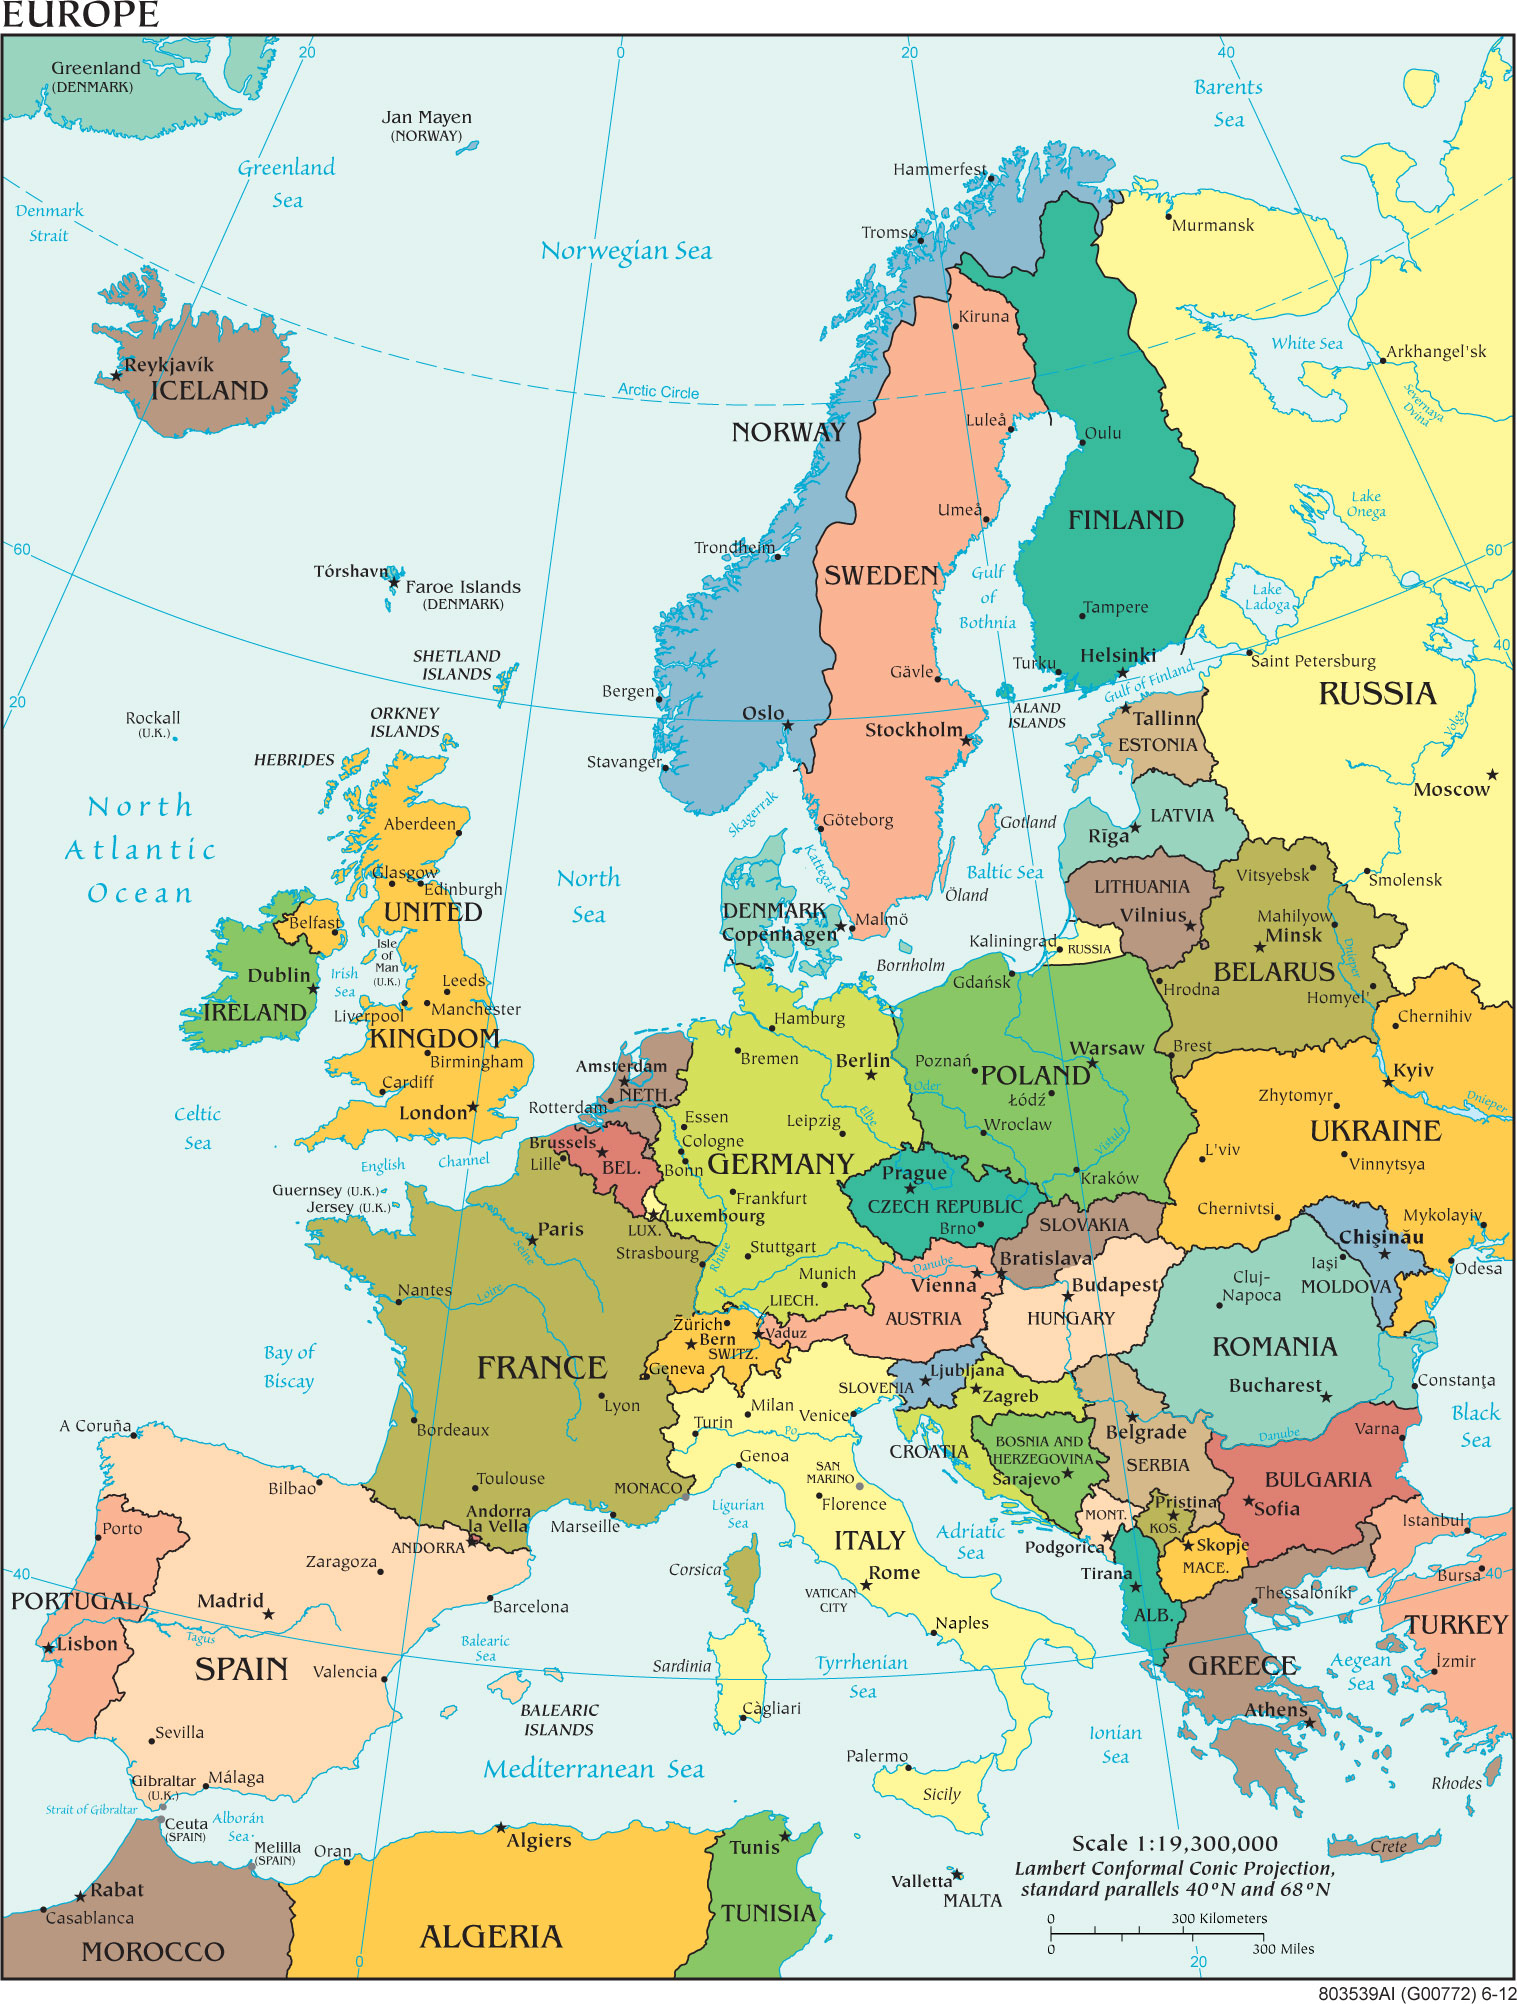 Bản đồ Châu Âu phóng to năm 2024 và các đổi mới đột phá về địa giới hành chính, cho bạn biết rõ hơn về tình hình chính trị, kinh tế và xã hội của mỗi quốc gia tại Châu Âu. Hãy cùng khám phá những điều mới lạ và thú vị trên mảnh đất Châu Âu này.